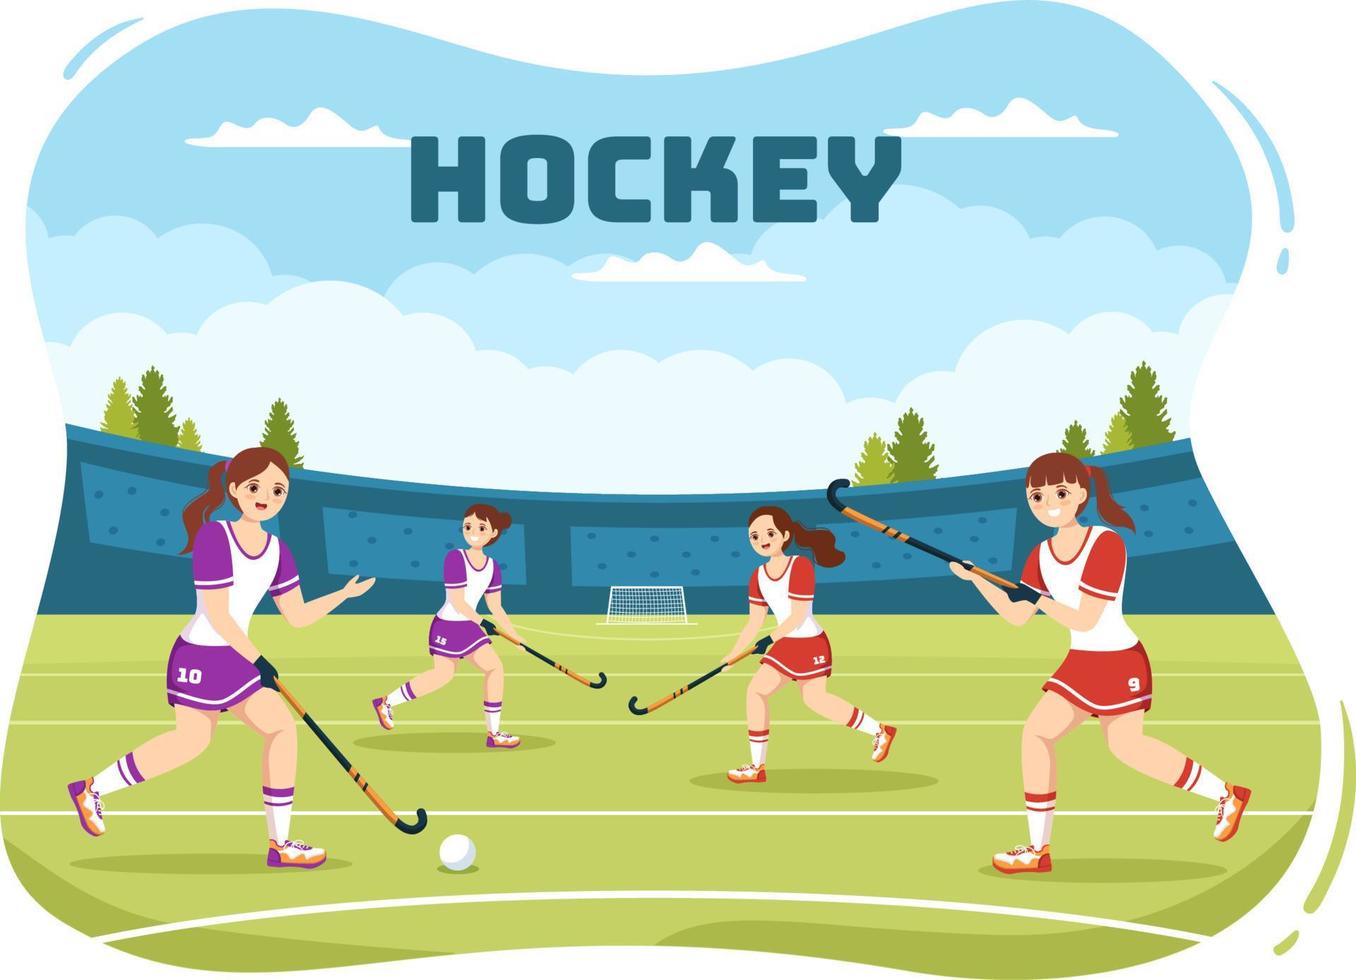 hockey spelare sport med hjälm, pinne, puck och skridskor på grön fält för spel eller mästerskap i platt tecknad serie hand dragen mallar illustration vektor